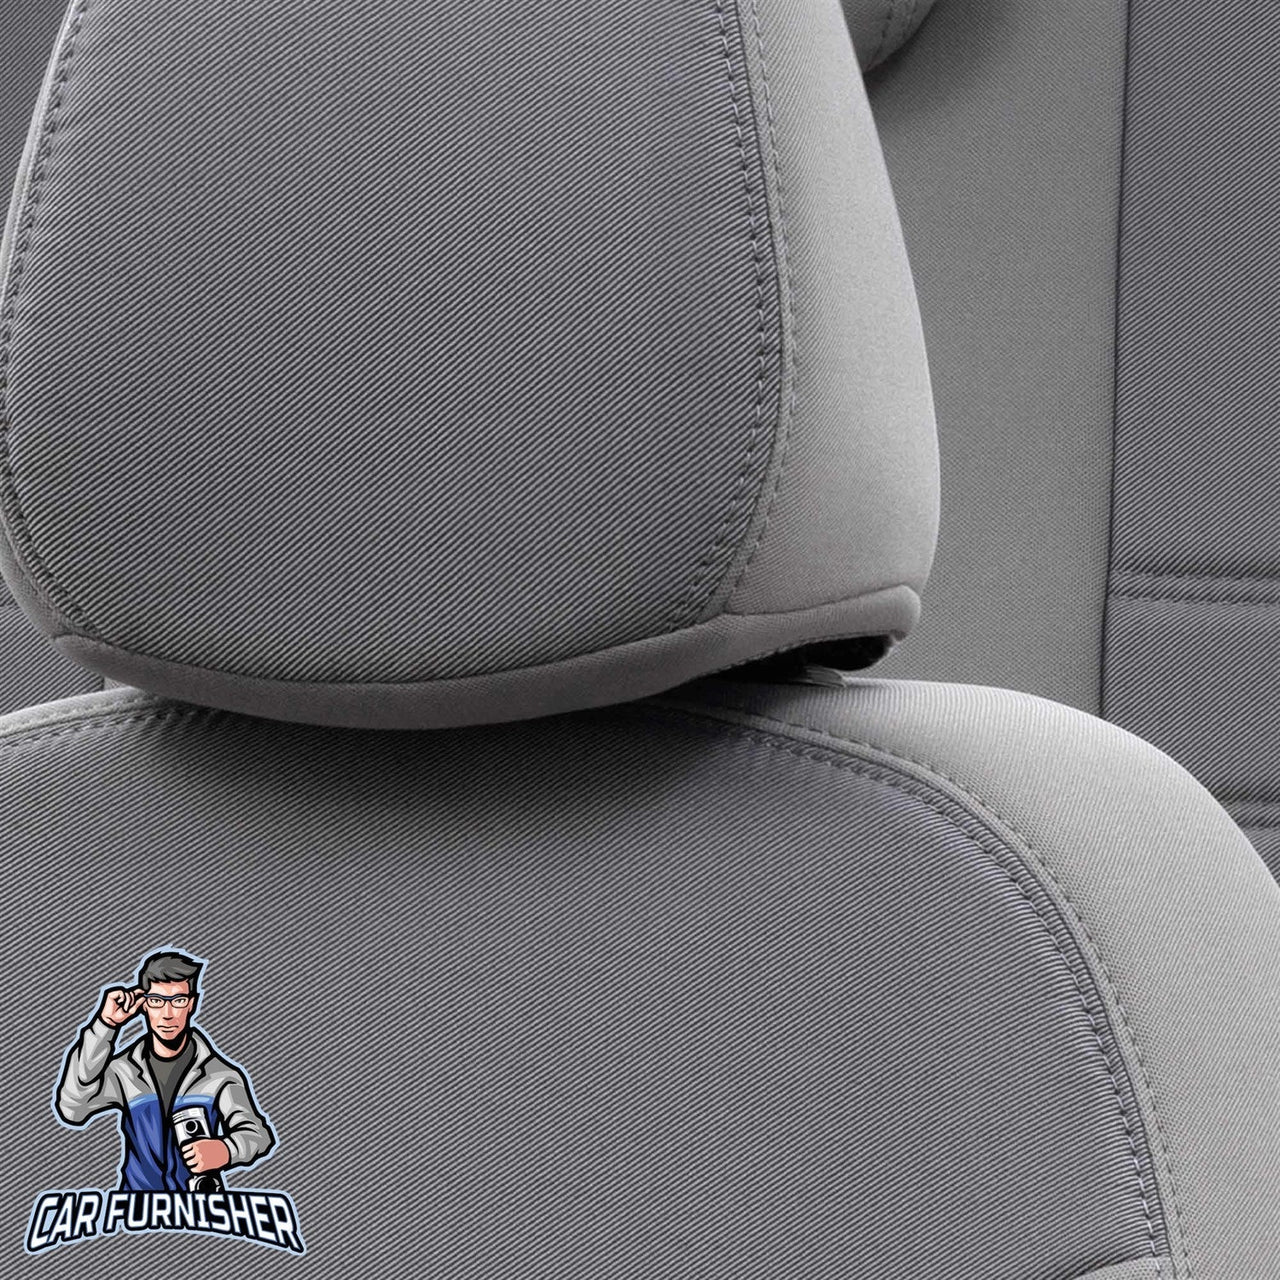 Skoda Citigo Seat Covers Original Jacquard Design Gray Jacquard Fabric